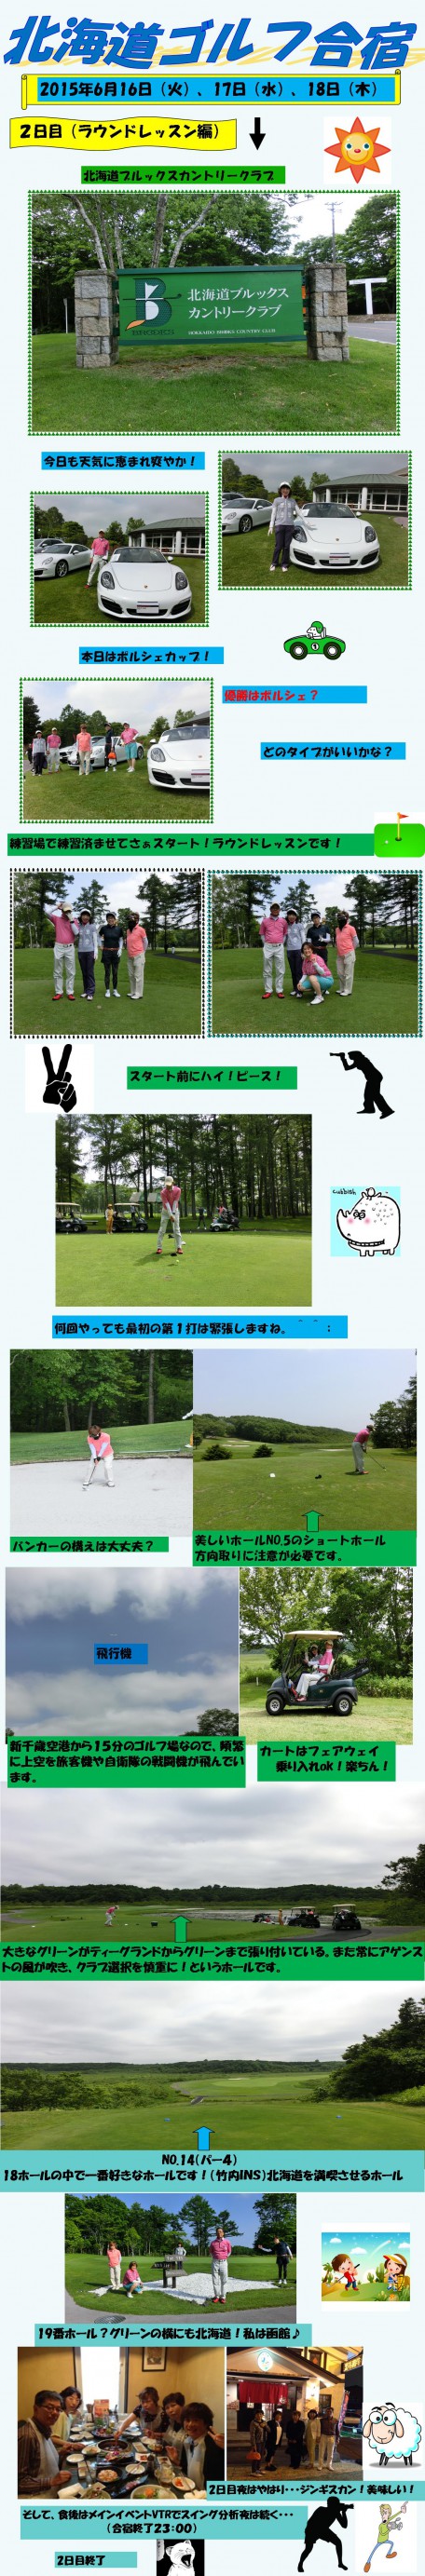 北海道ゴルフイベント御報告(2日目） - コピー